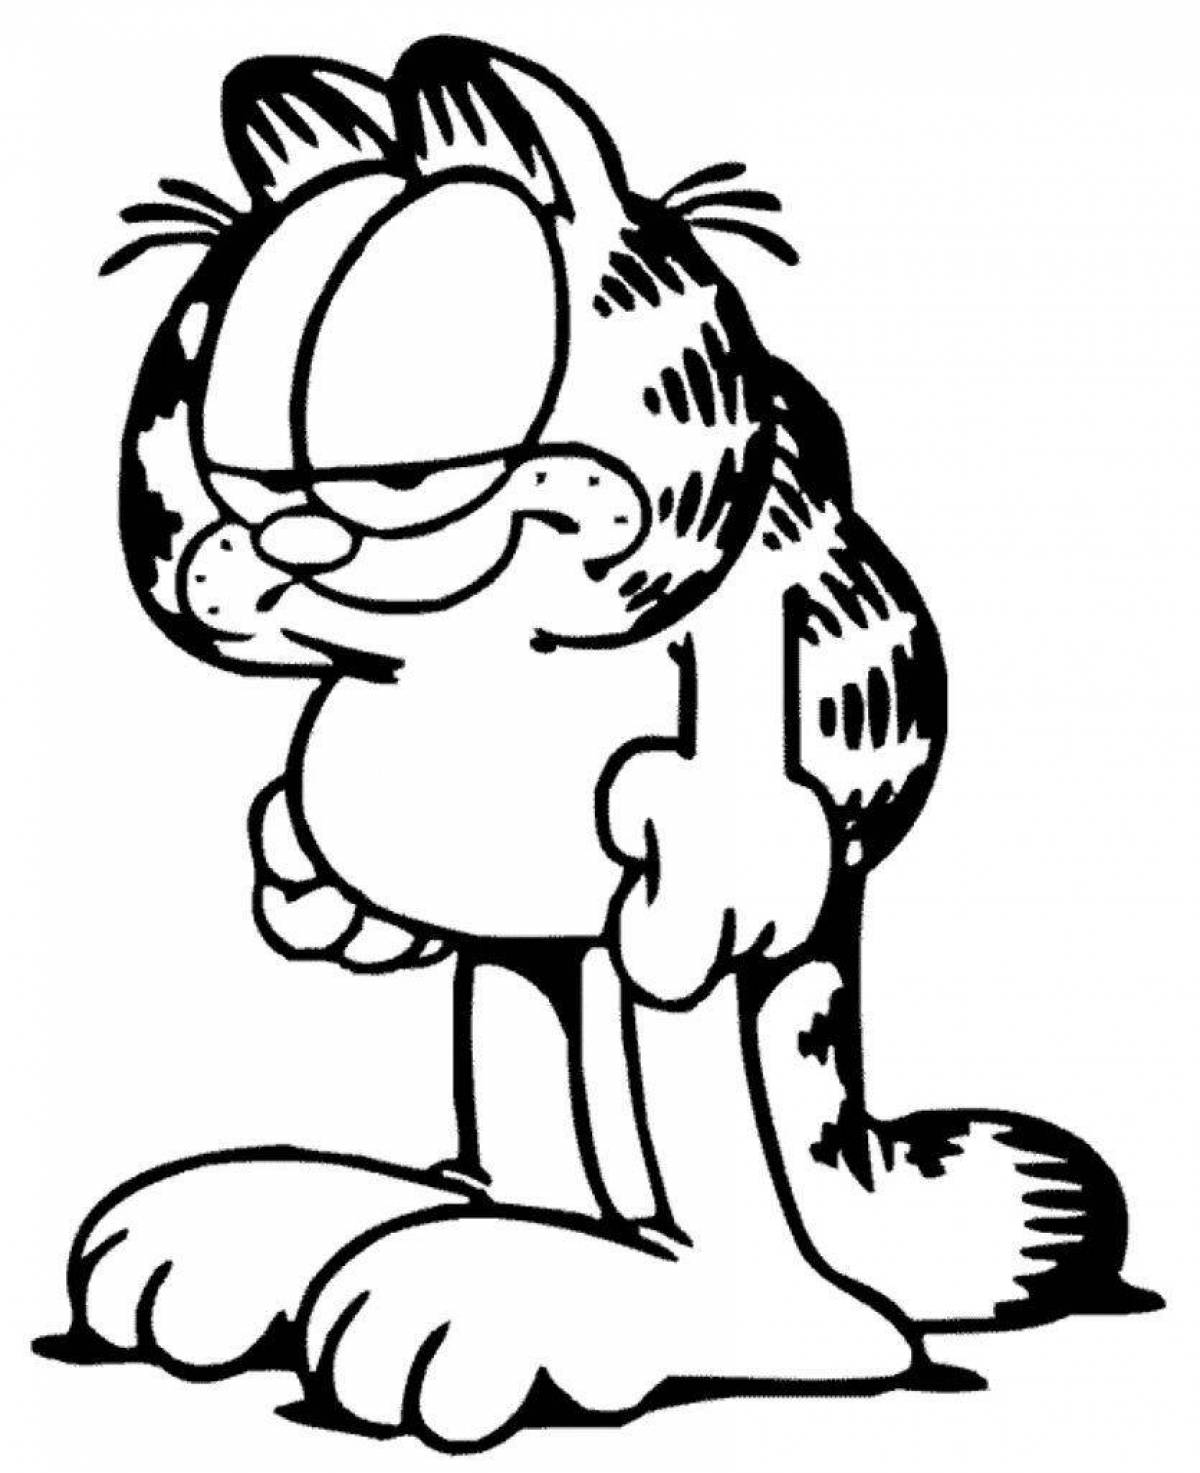 Garfield #7